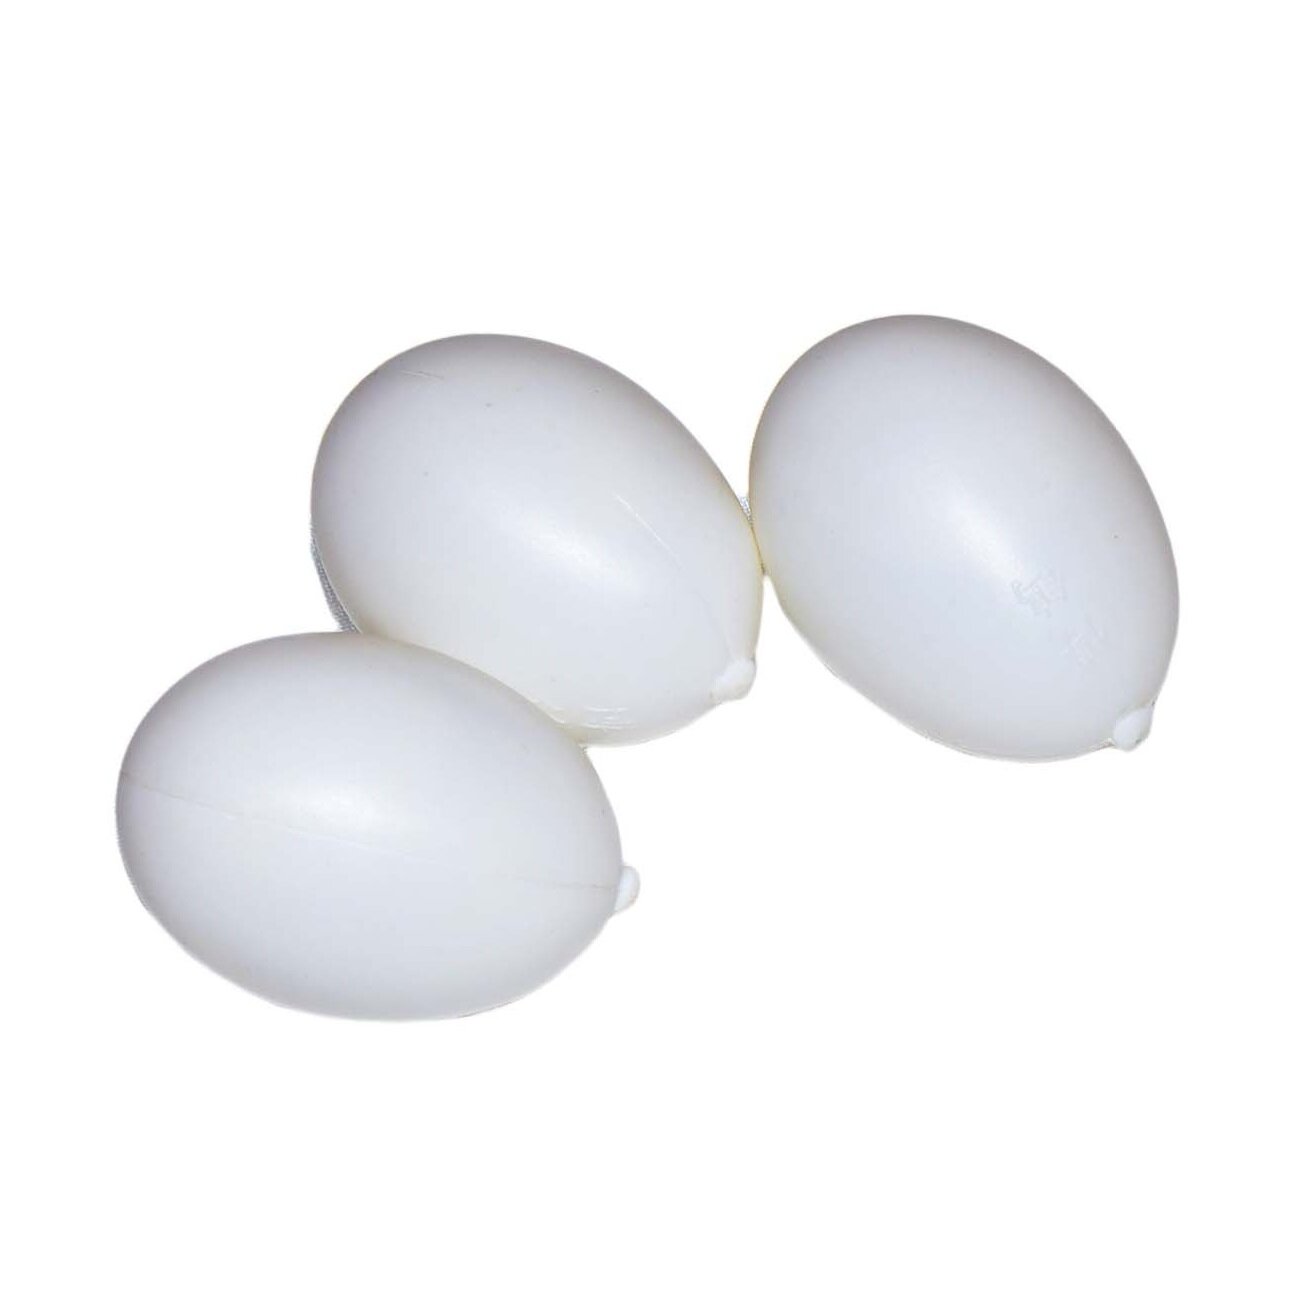 Пластиковое подменное перепелиное яйцо - 4 штуки